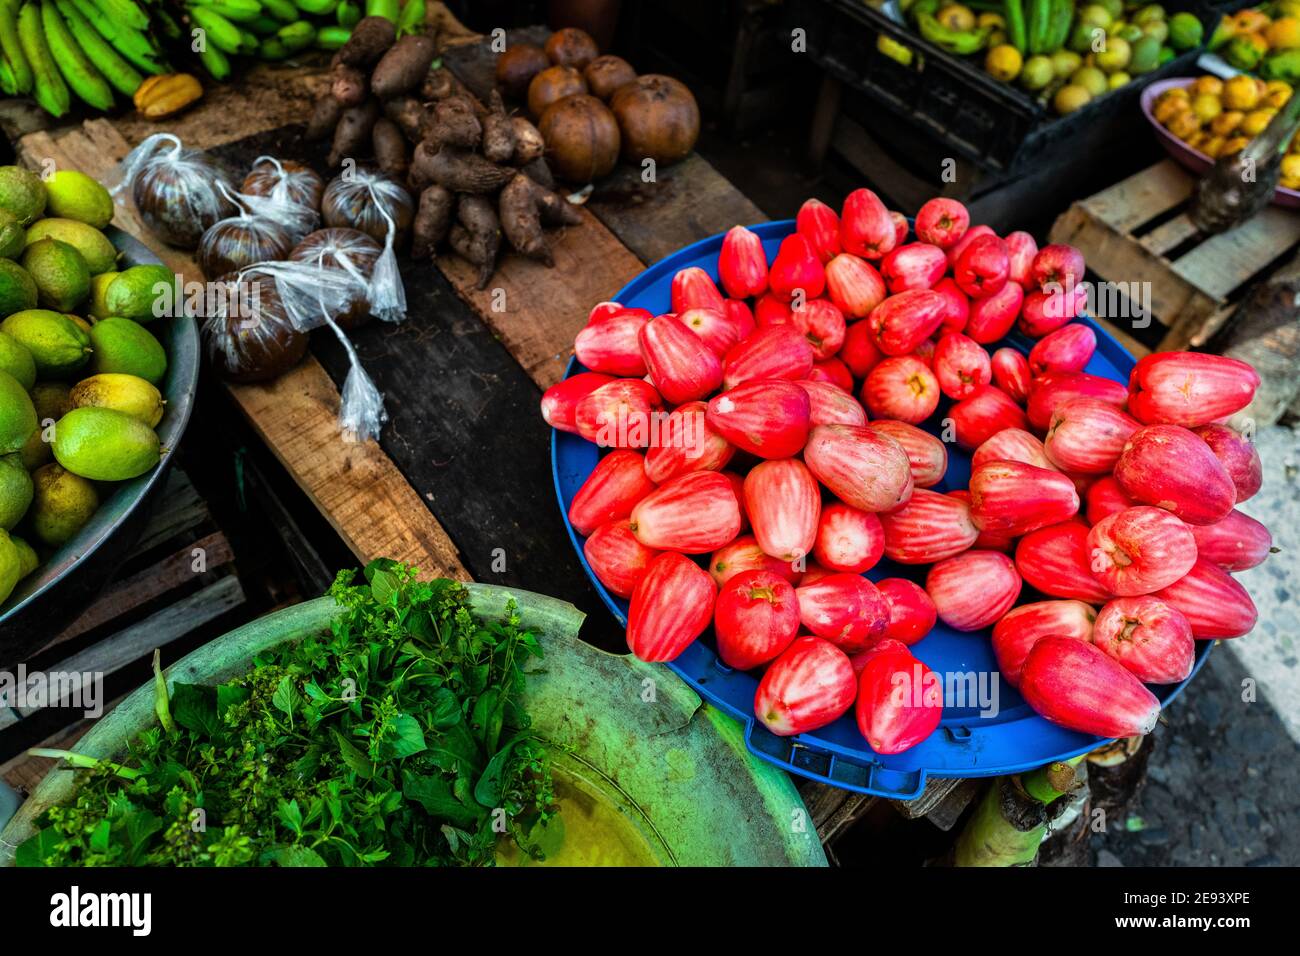 Auf einem Straßenmarkt entlang des Flusses Atrato in Quibdó, Chocó, der pazifischen Region Kolumbiens, findet man jede Menge Obst, Kräuter und Gemüse. Stockfoto